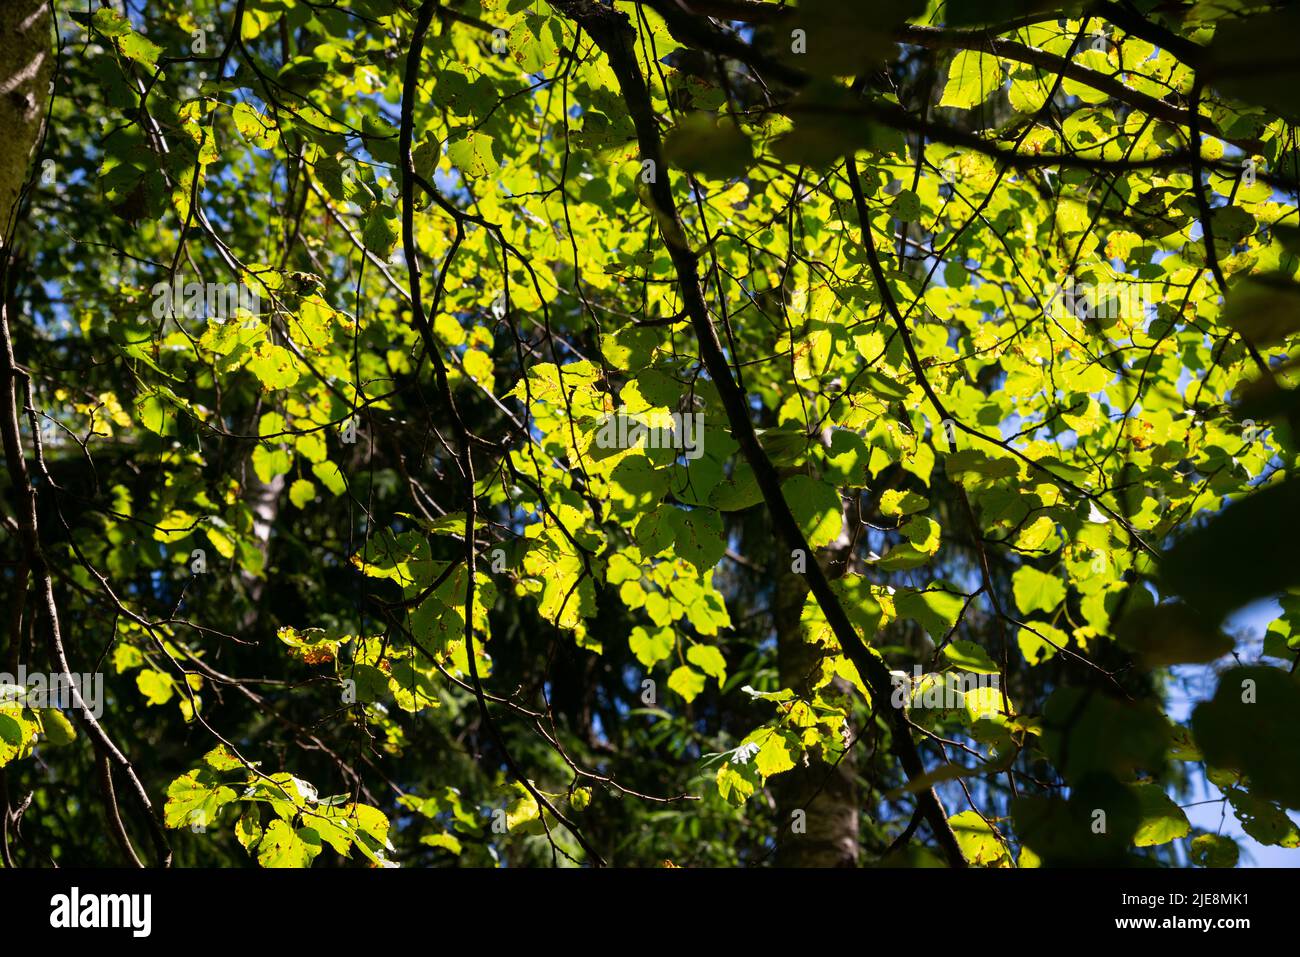 verde foresta lussureggiante con foglie, fogliame e struttura di cespuglio nella natura estiva Foto Stock